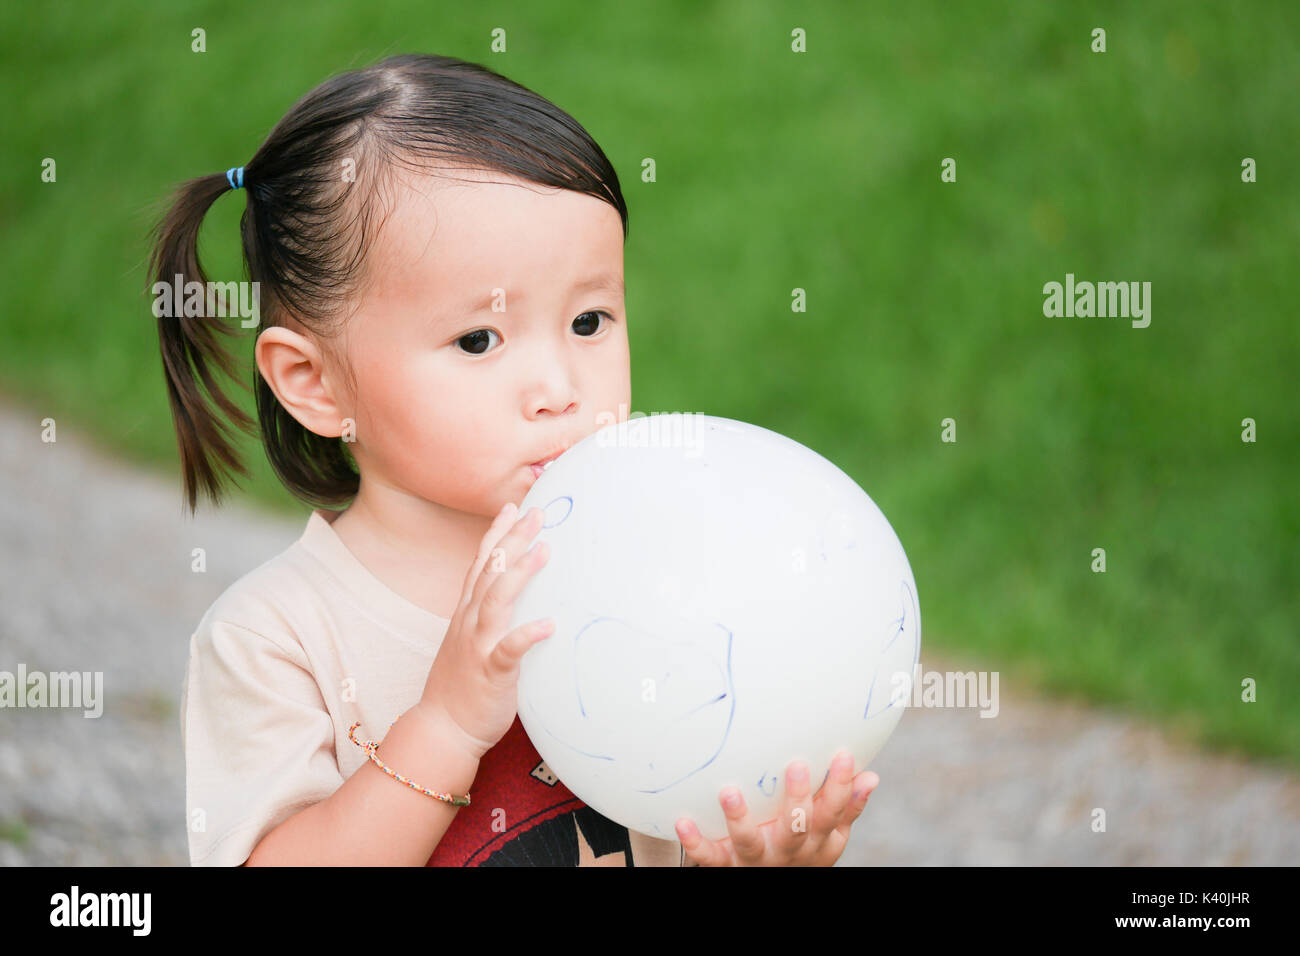 Ballon in die Luft zu sprengen: Nahaufnahme, Porträt von kleinen Mädchen bläst einen Luftballon in den grünen Garten Stockfoto